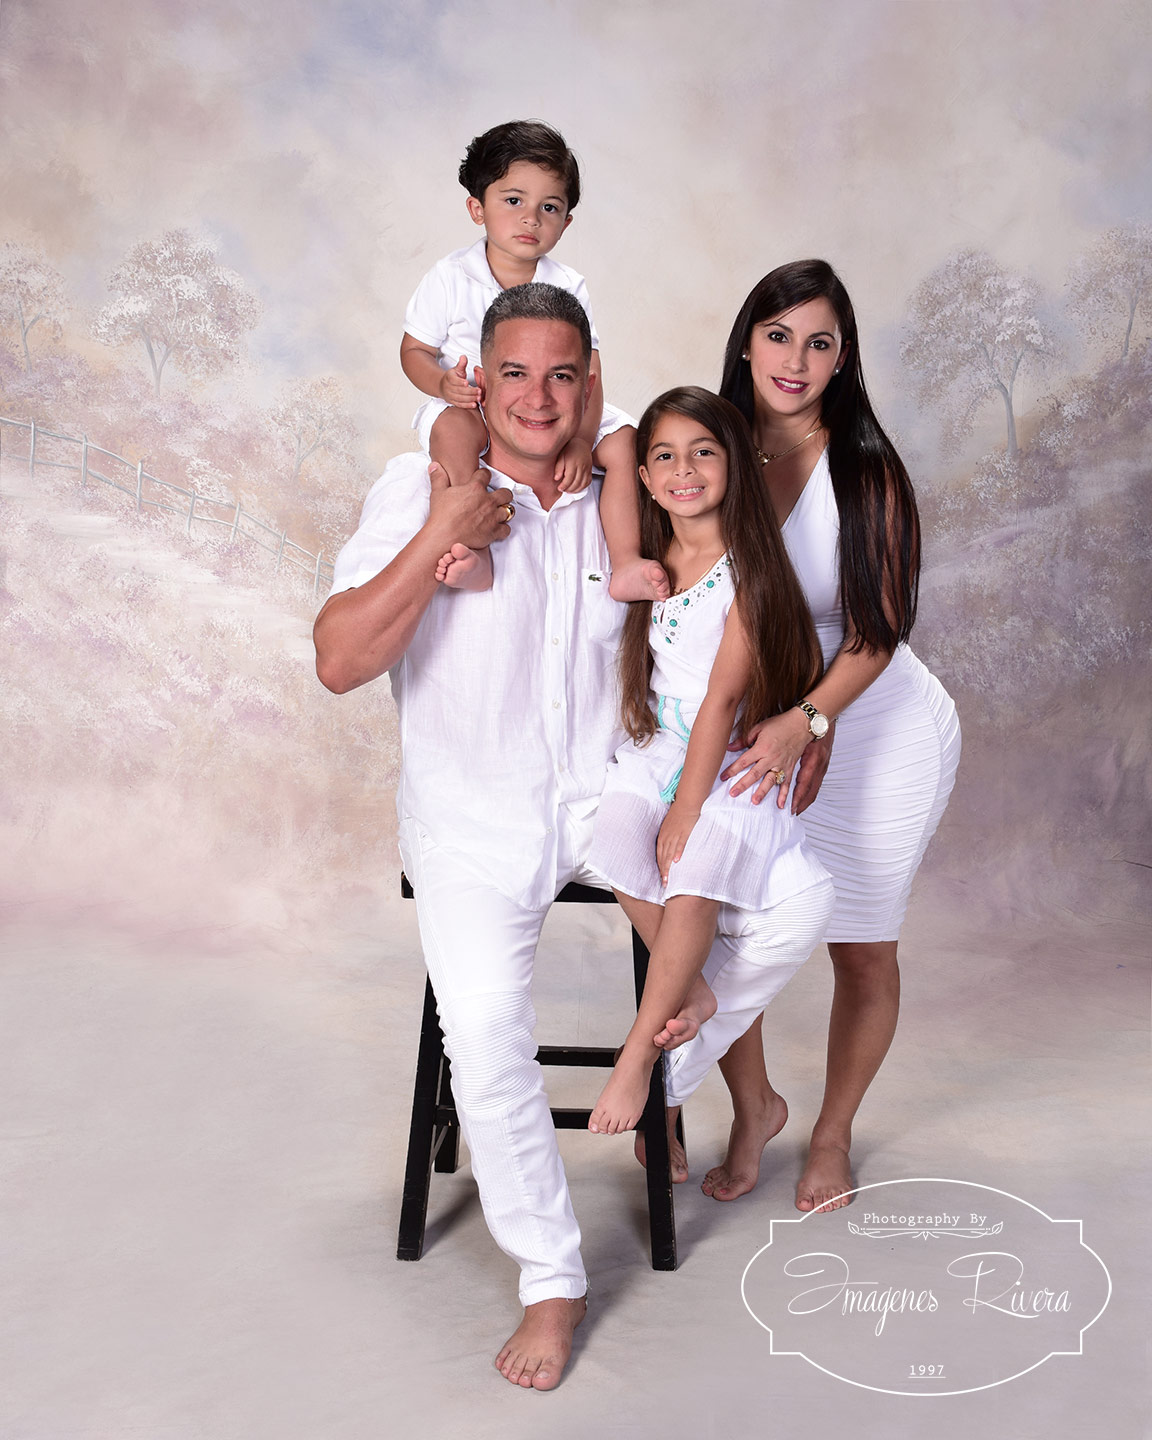 ♥ Creative Family Photography | Imagenes Rivera Miami ♥